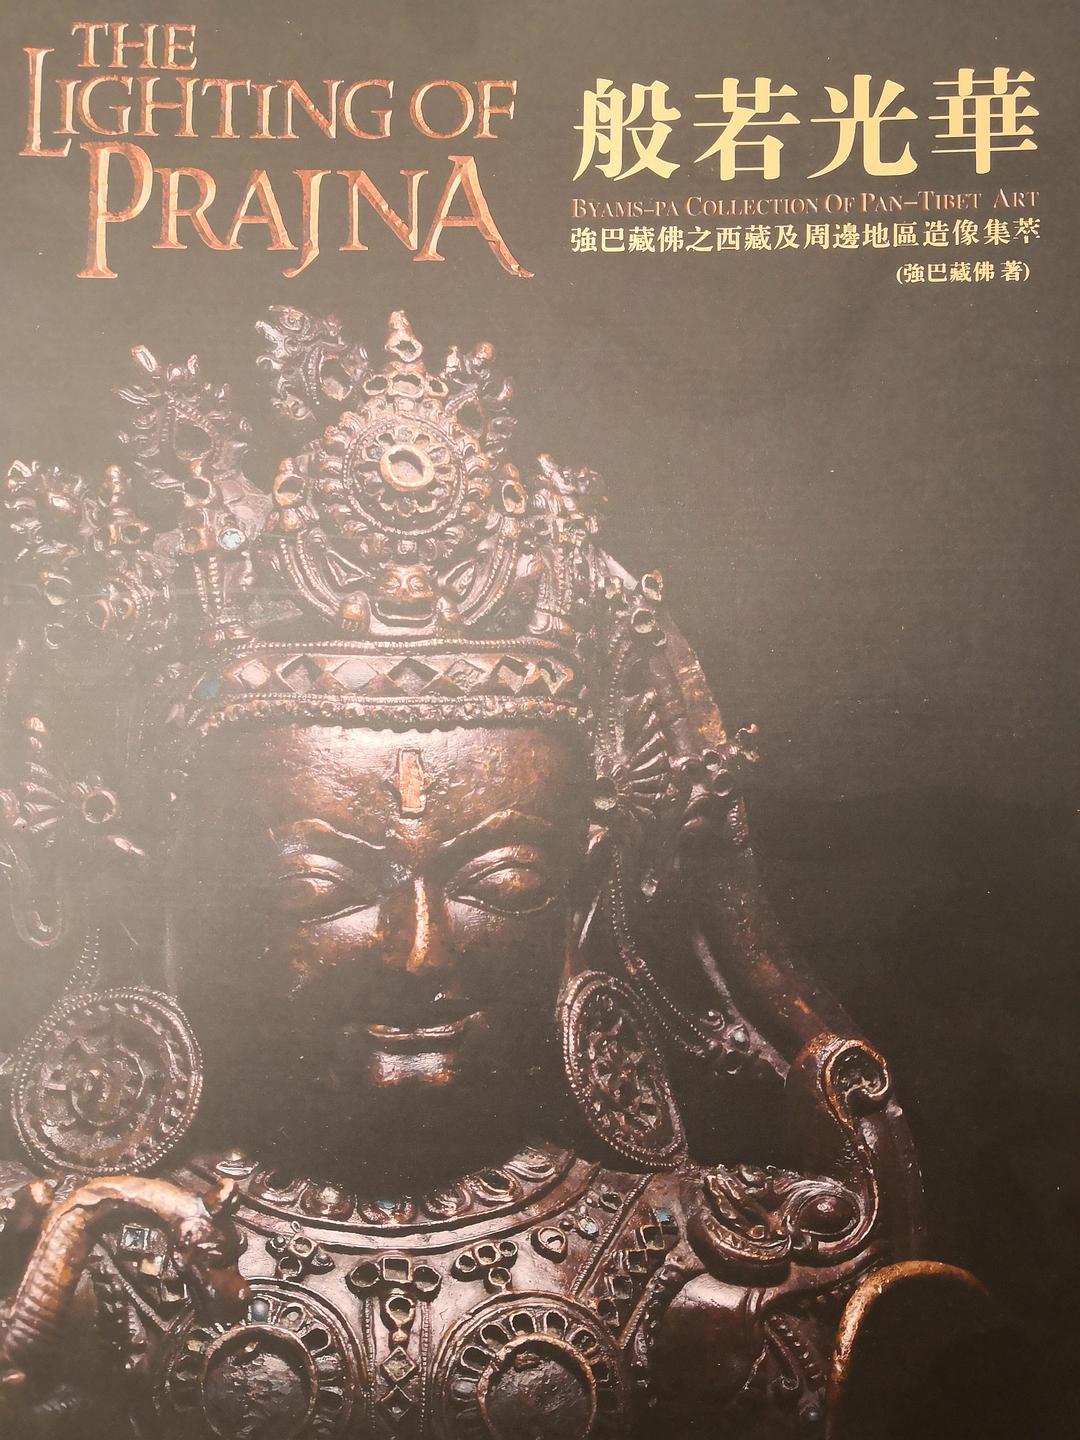 般若光华 强巴藏佛之西藏及周边地区造像集萃 ryams-pa collection of pan-tibet art